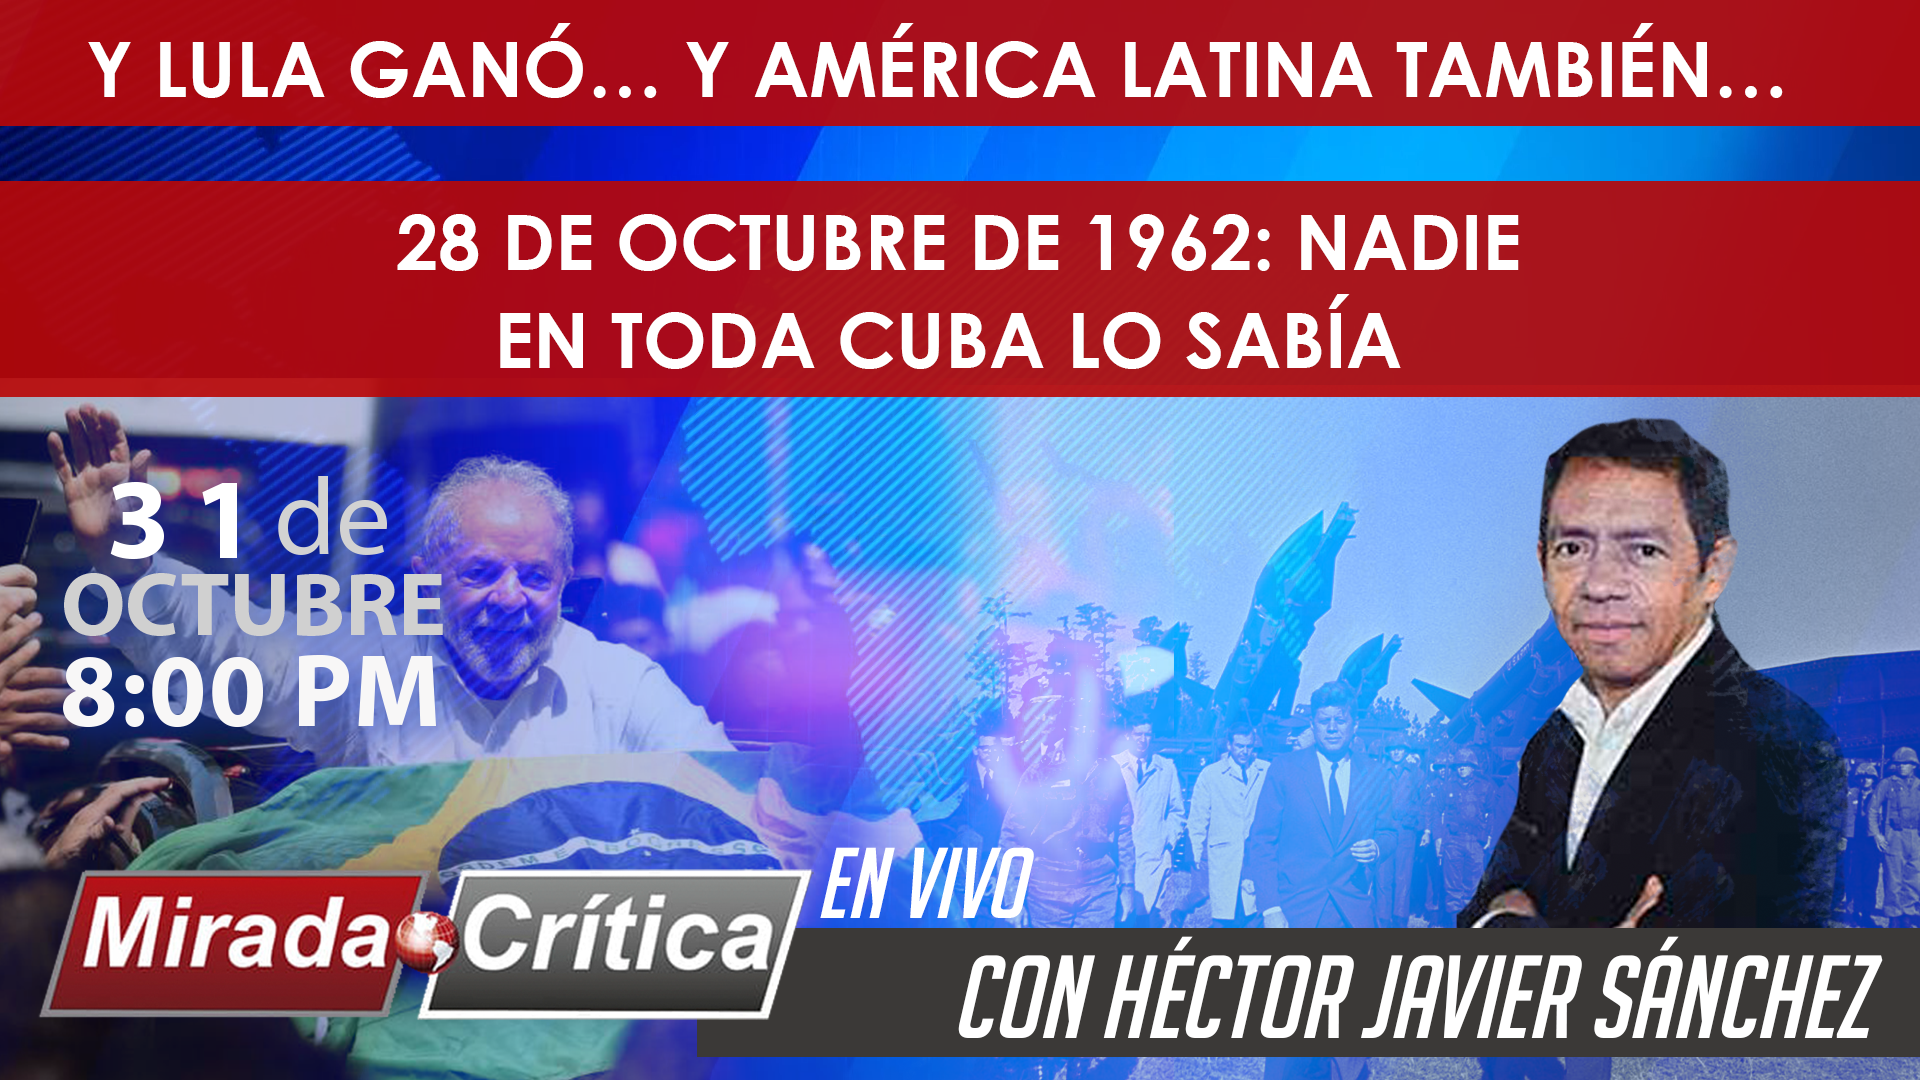 Y Lula ganó… y América Latina también… / 28 de octubre de 1962: nadie en cuba sabía - Mirada Crítica